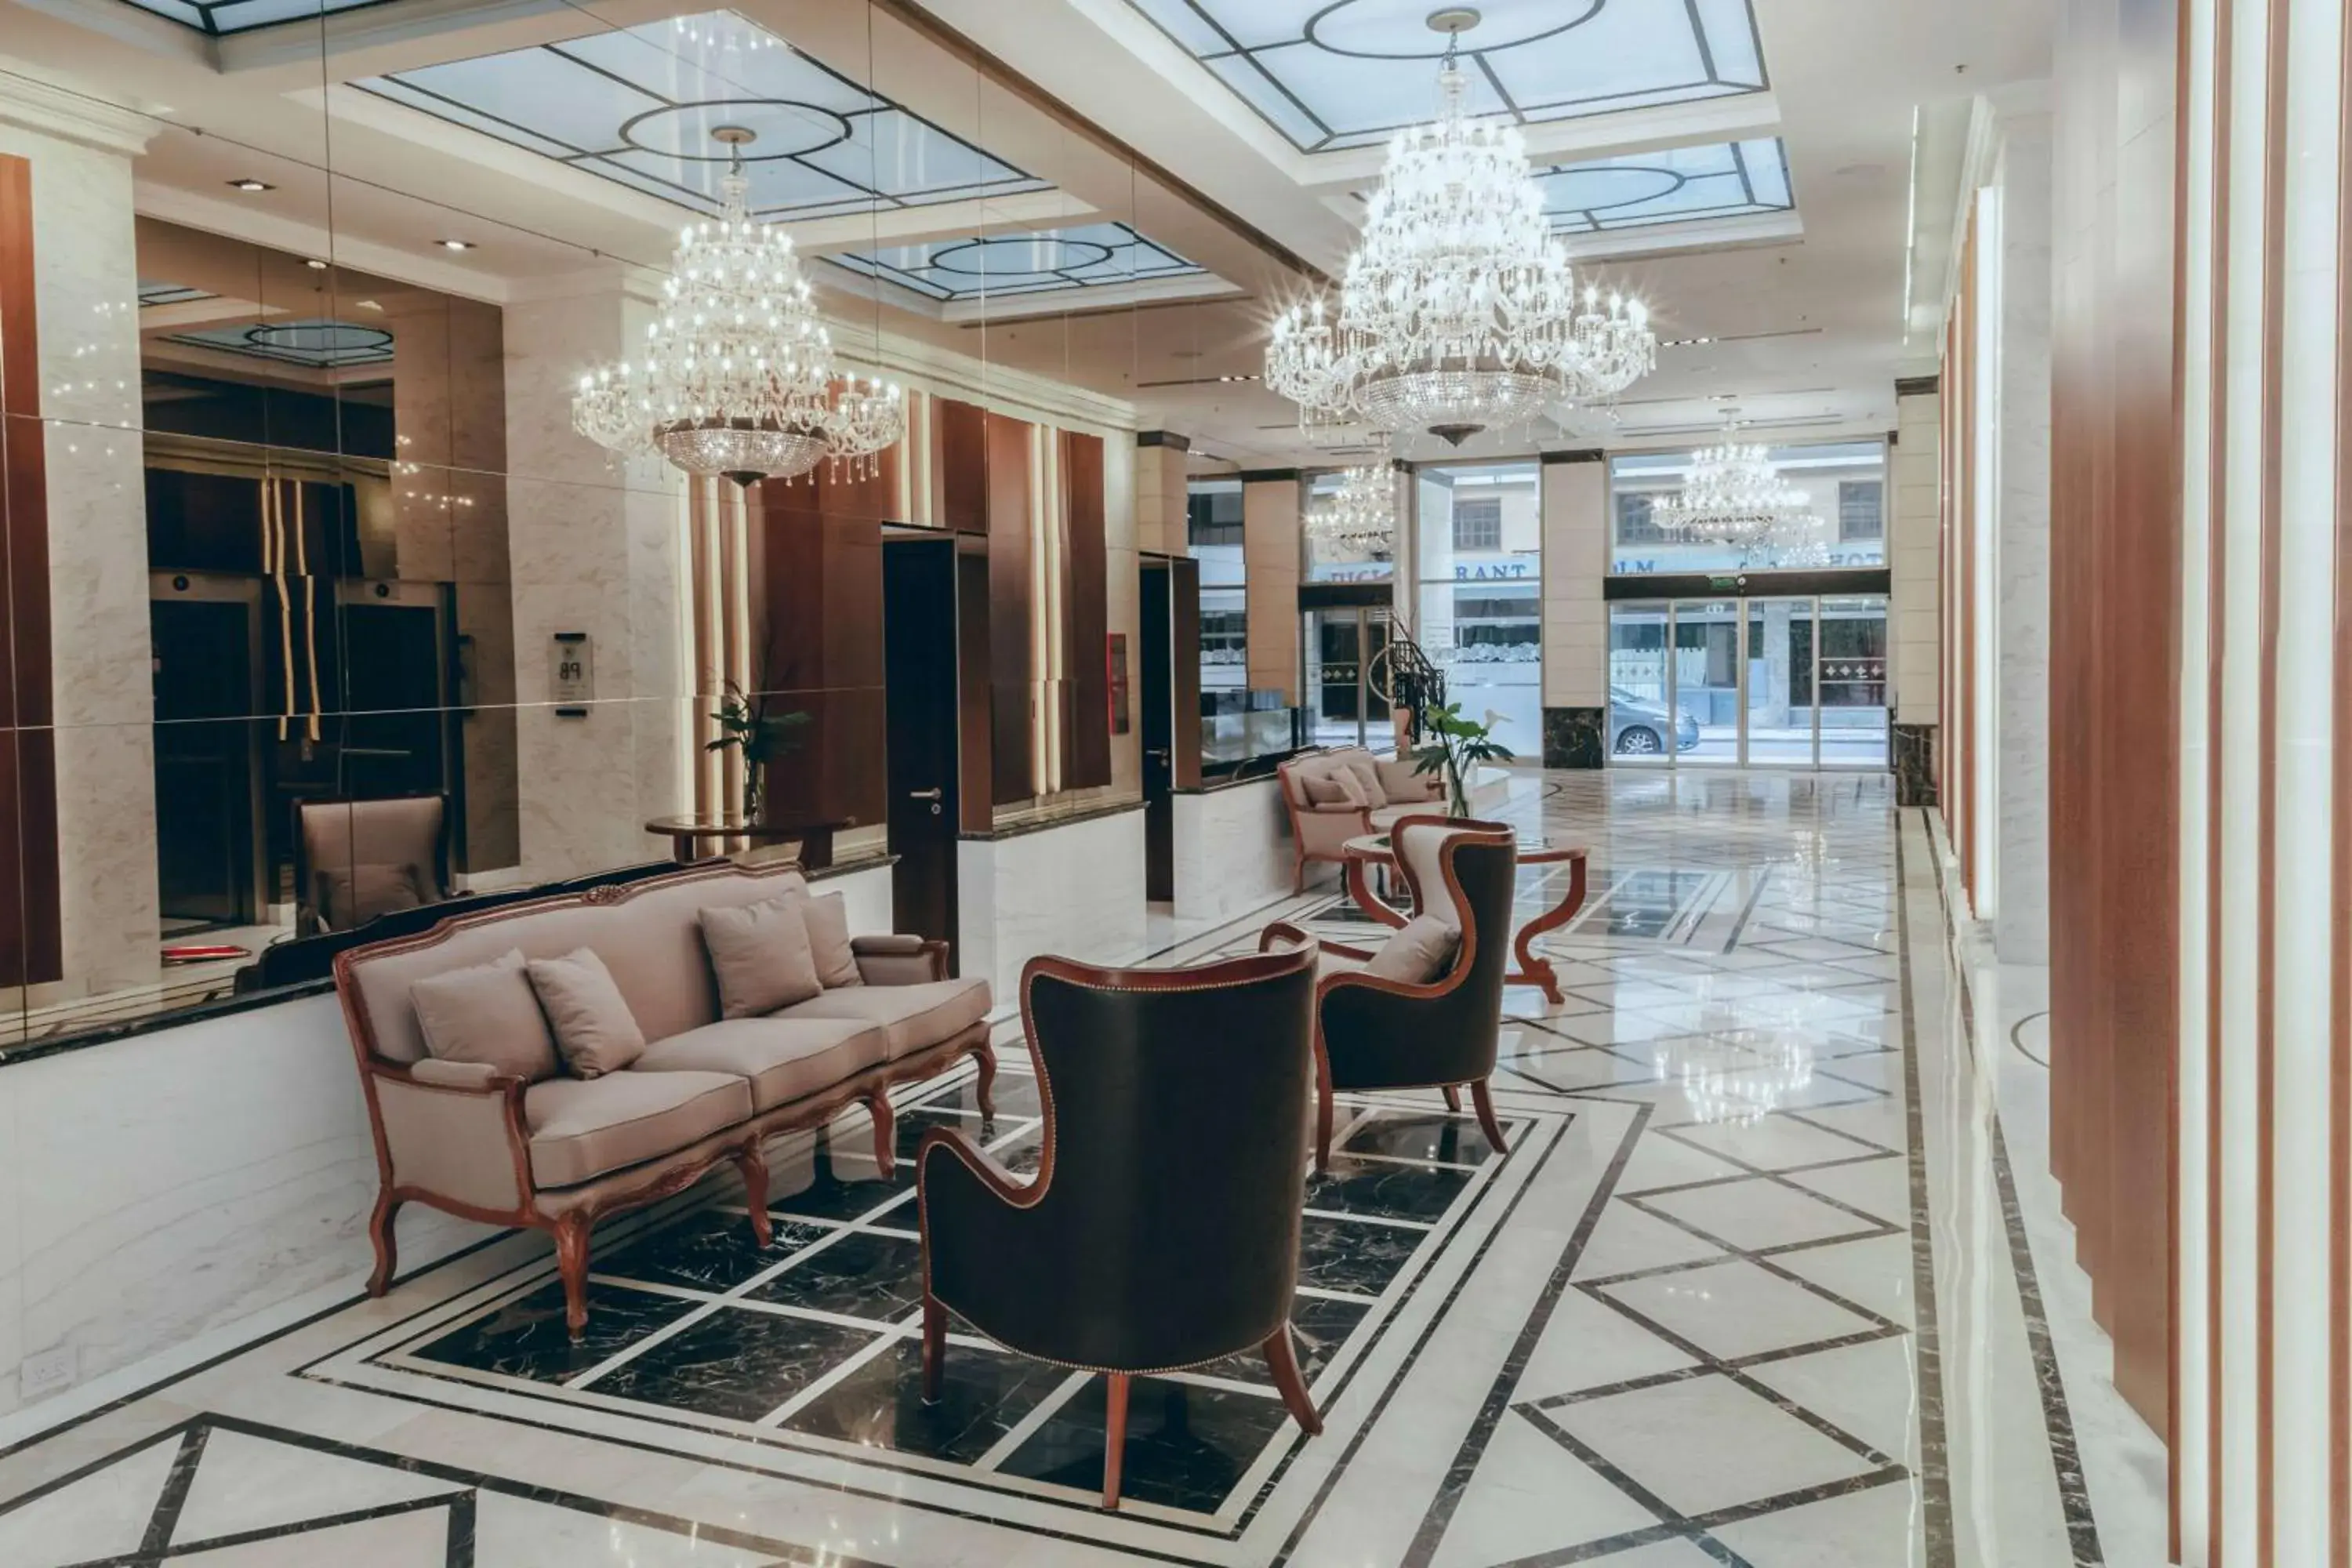 Lobby or reception, Lobby/Reception in Esplendor by Wyndham Buenos Aires Tango